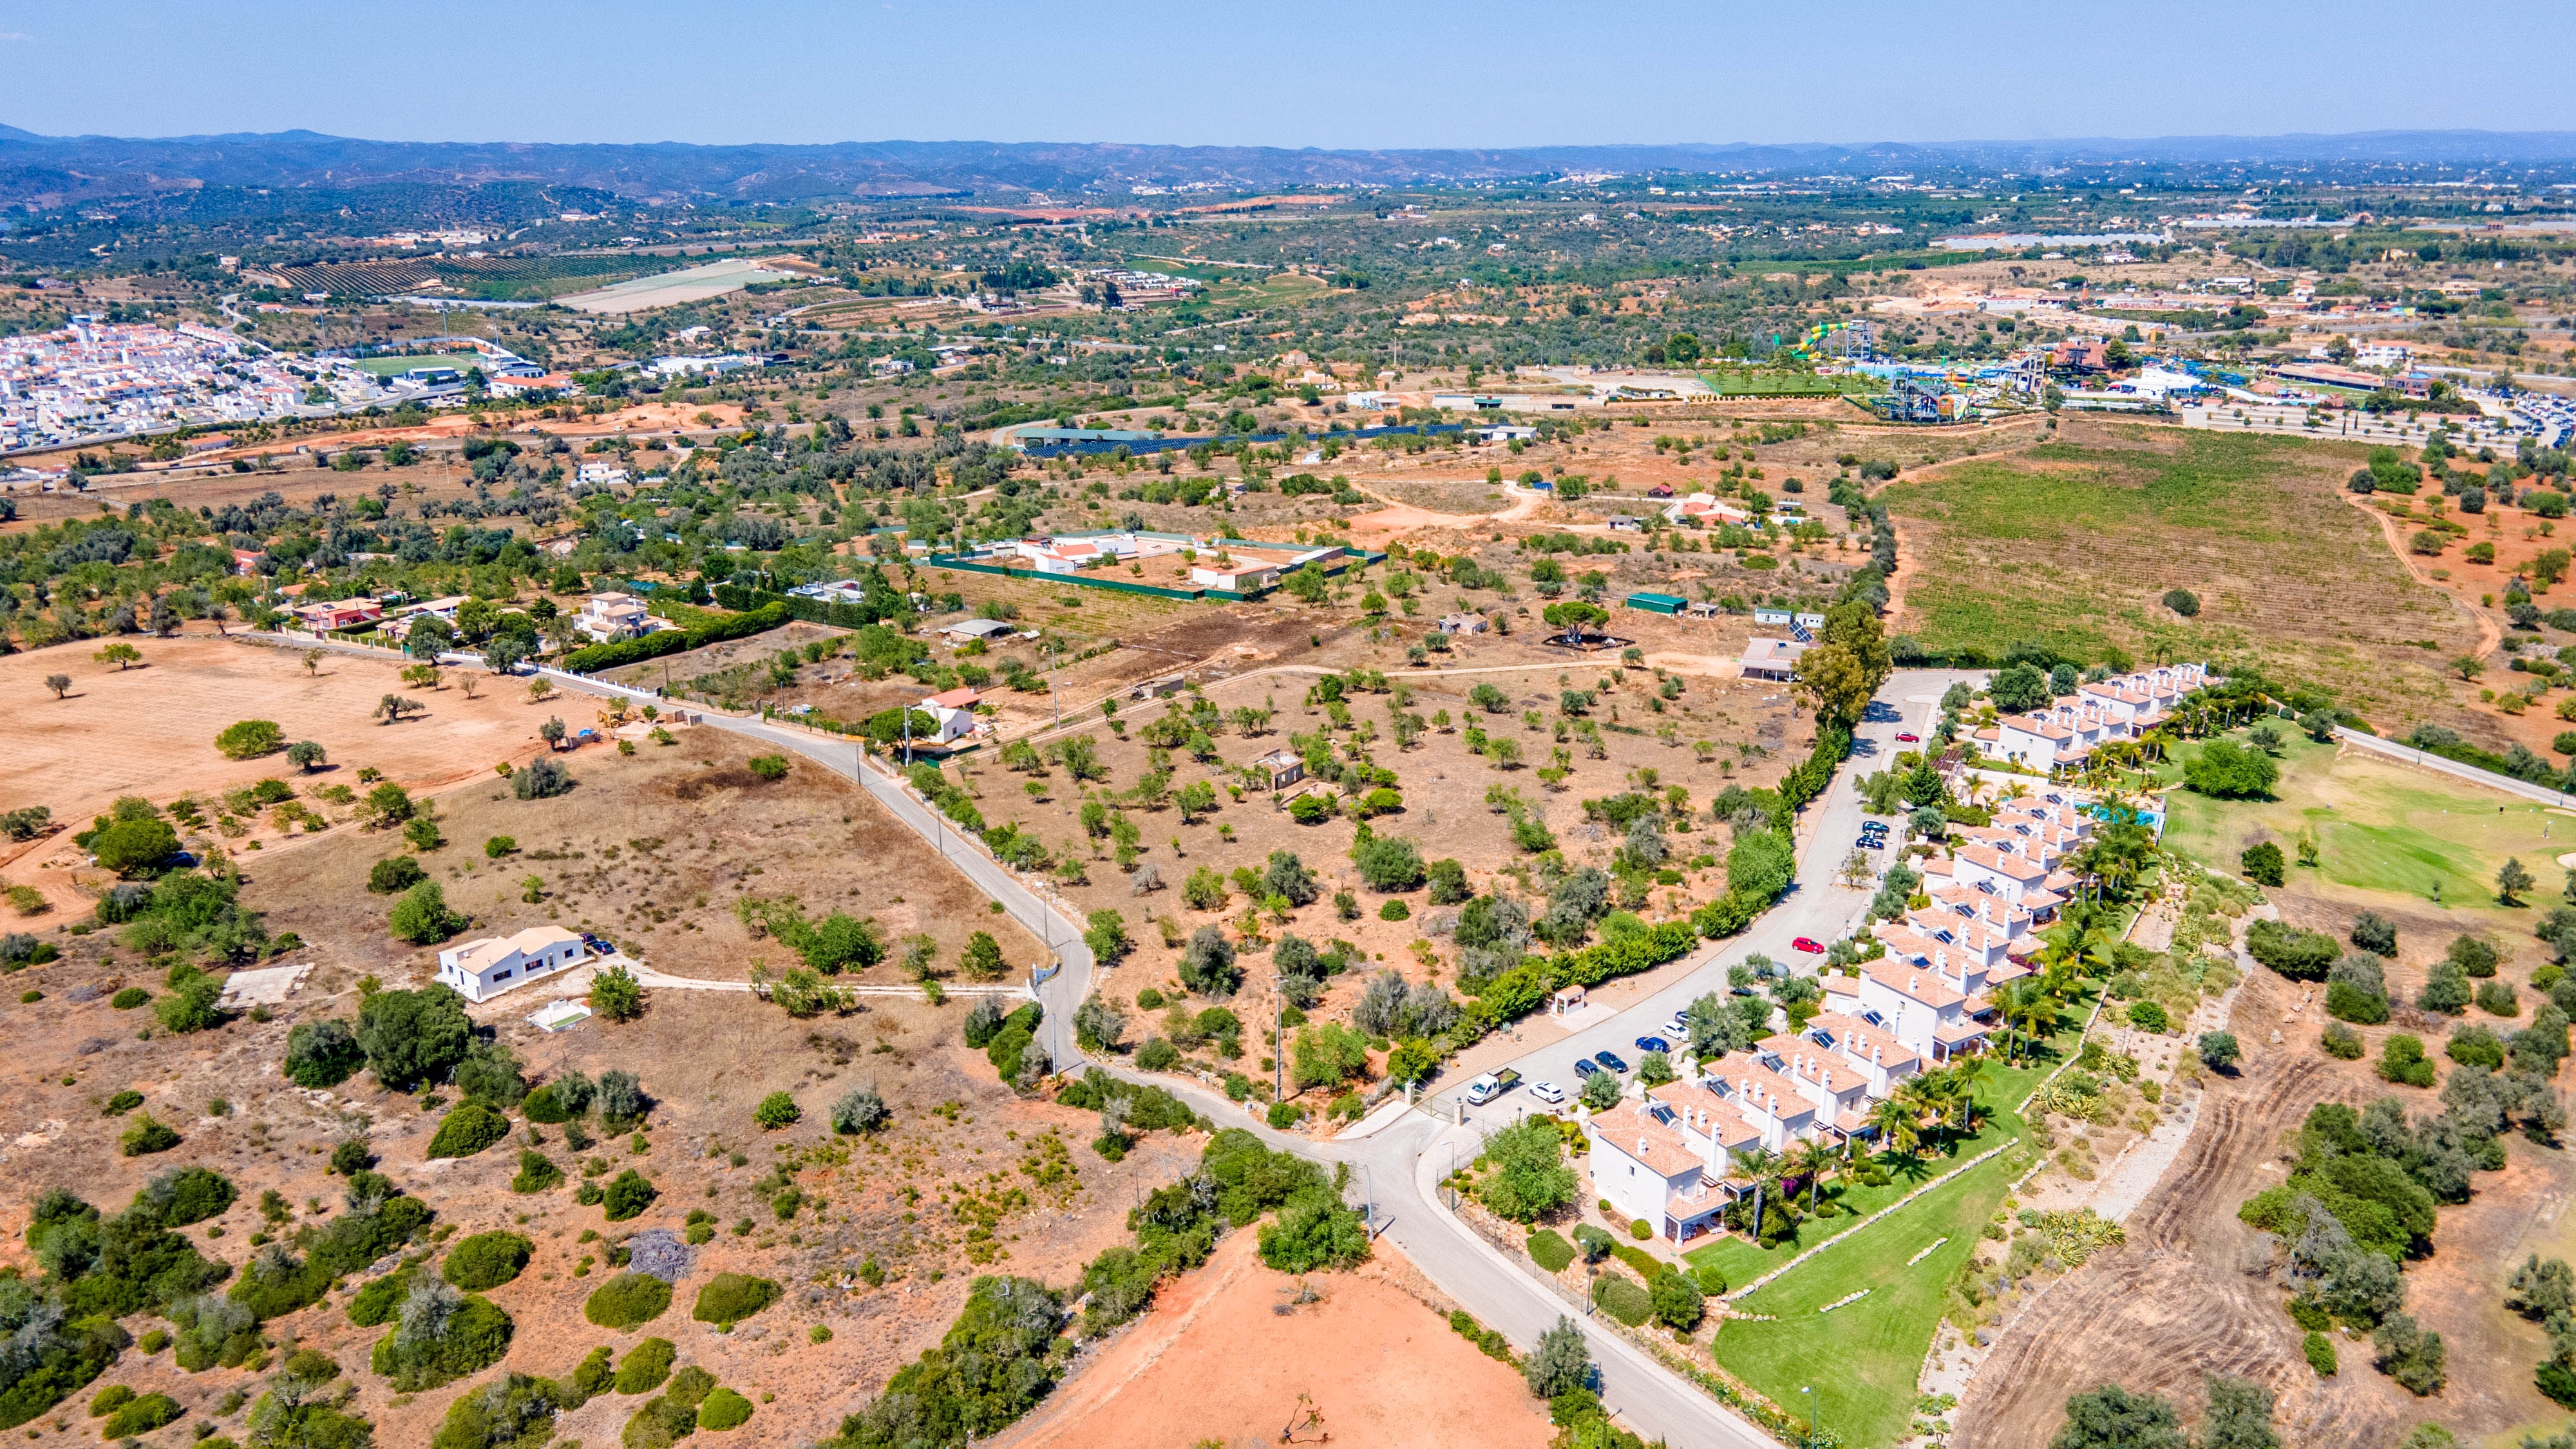 Grundstück mit Baugenehmigung für 18 Wohneinheiten, Lagoa, West Algarve | PPP2228 Hervorragende Lage in der Nähe der renommierten Golfakademien Vale de Pinta und Gramacho und nahe allen Annehmlichkeiten..
